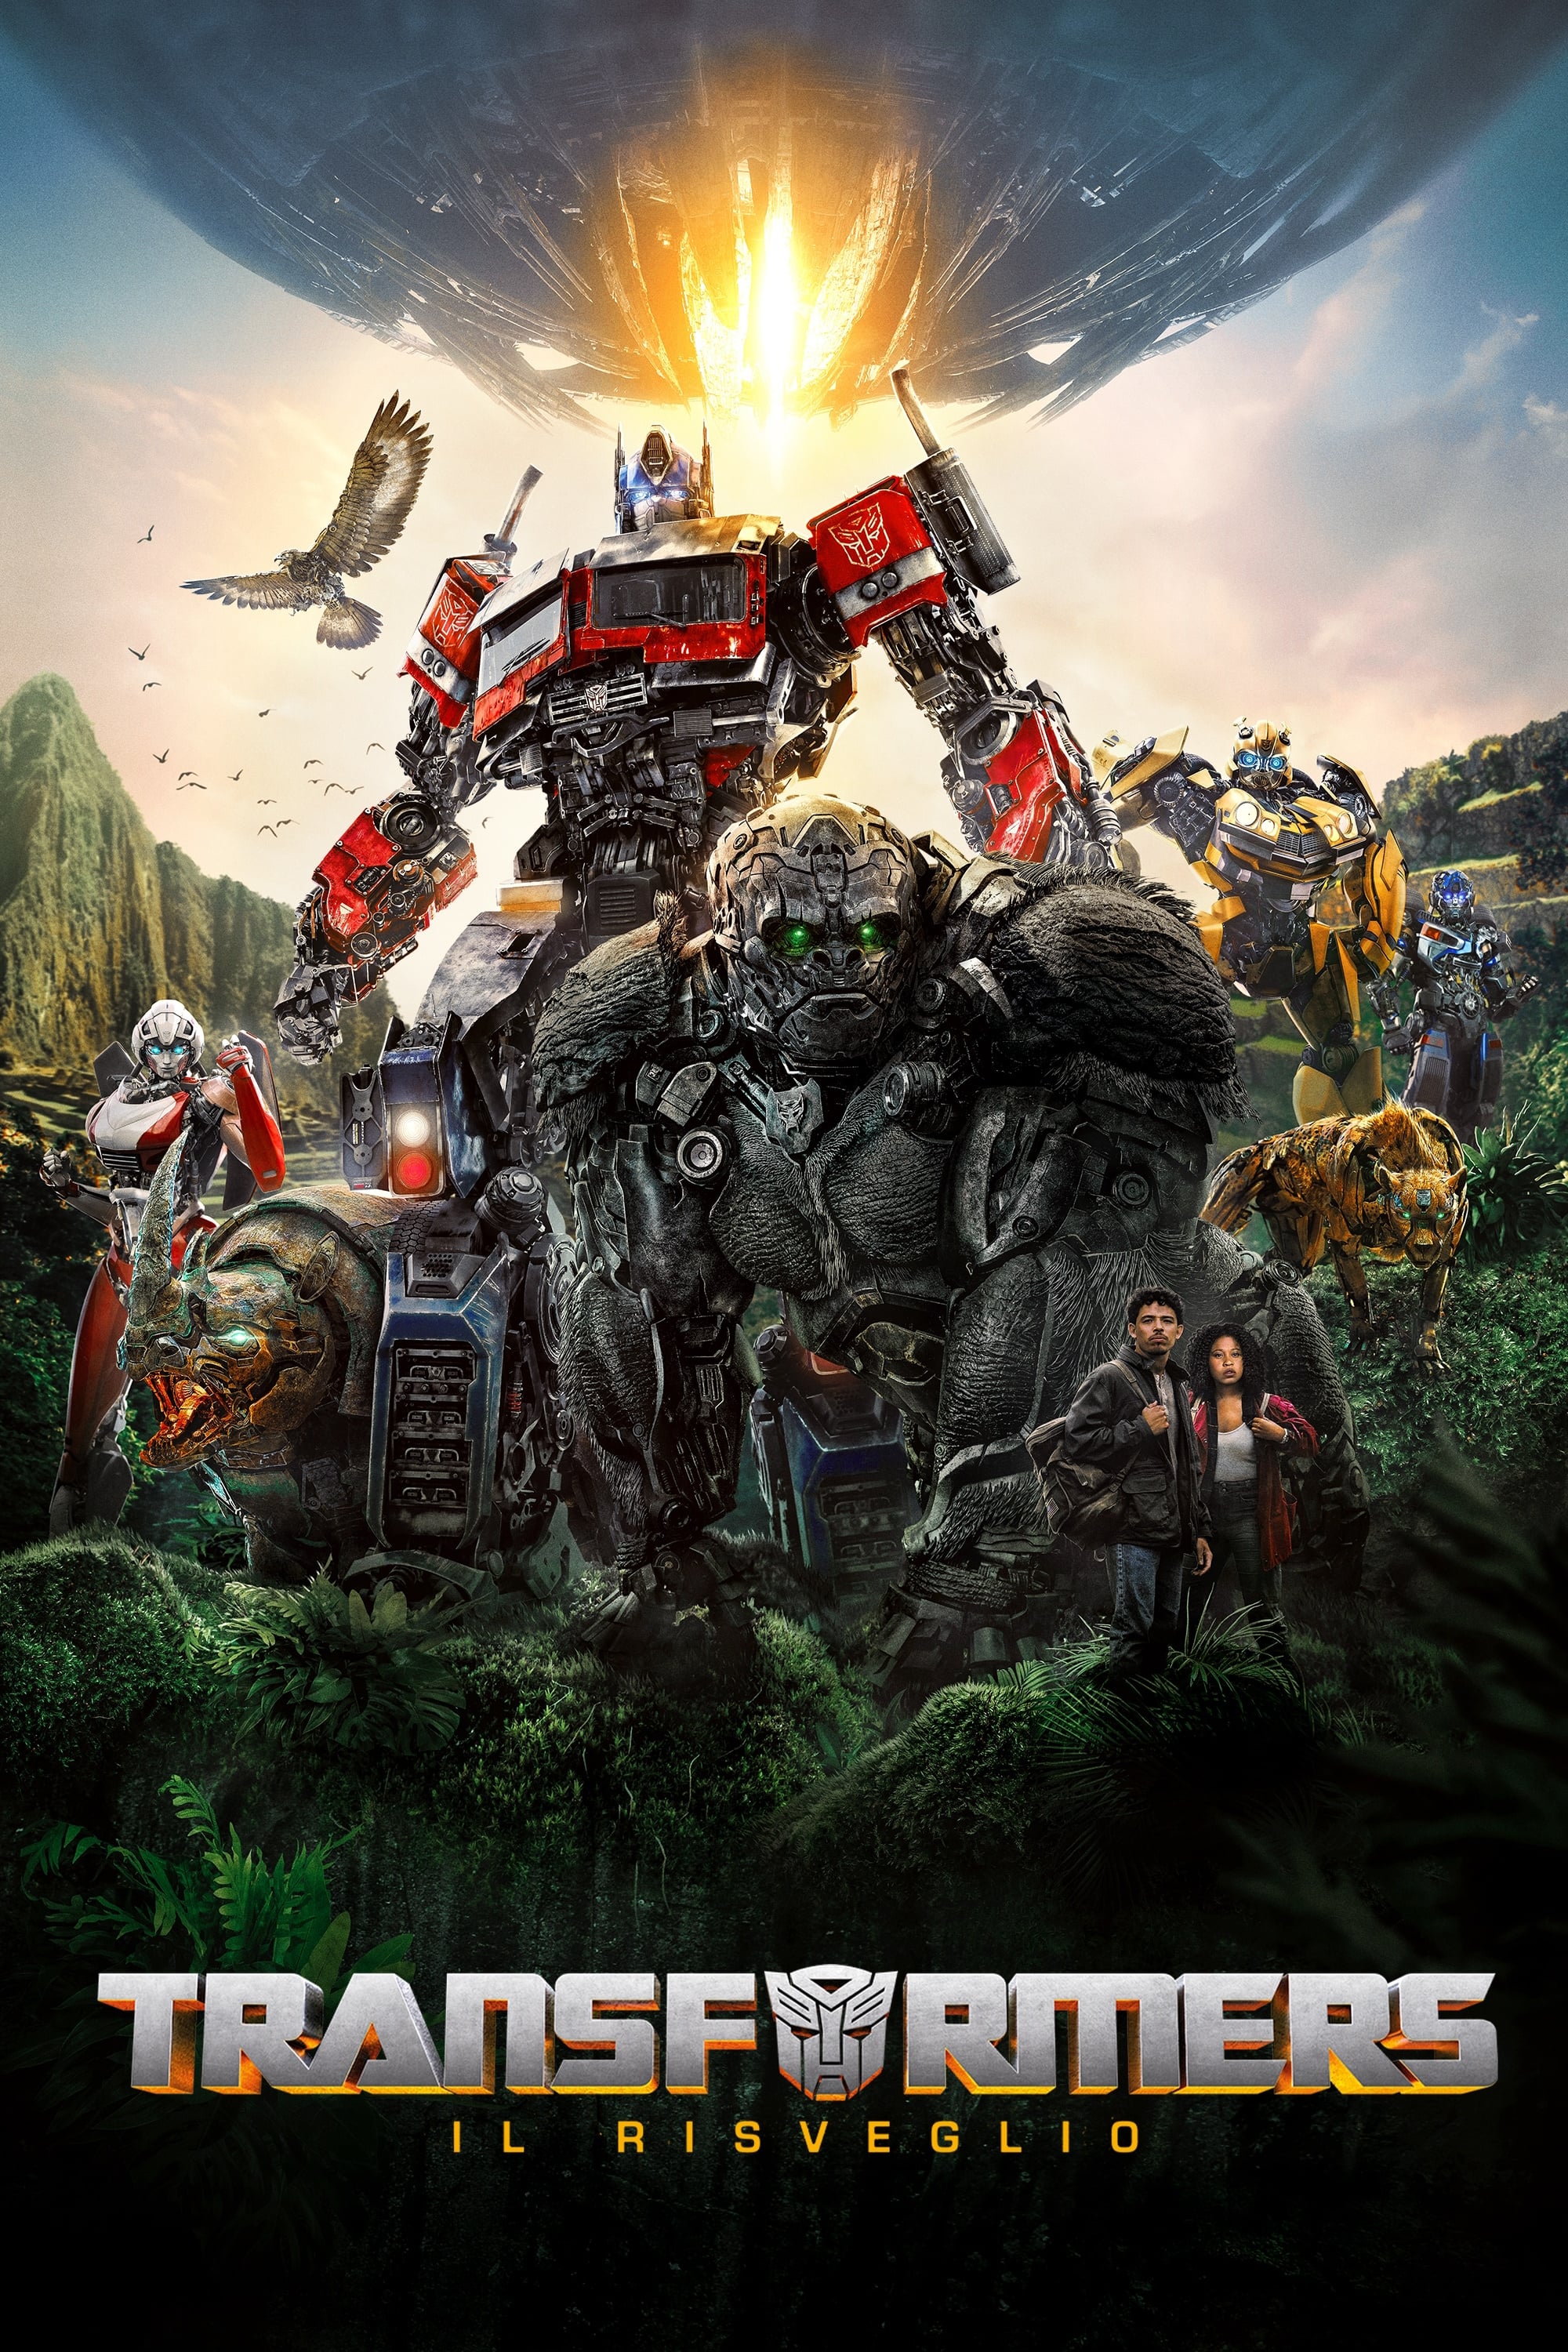 Transformers - Il risveglio film